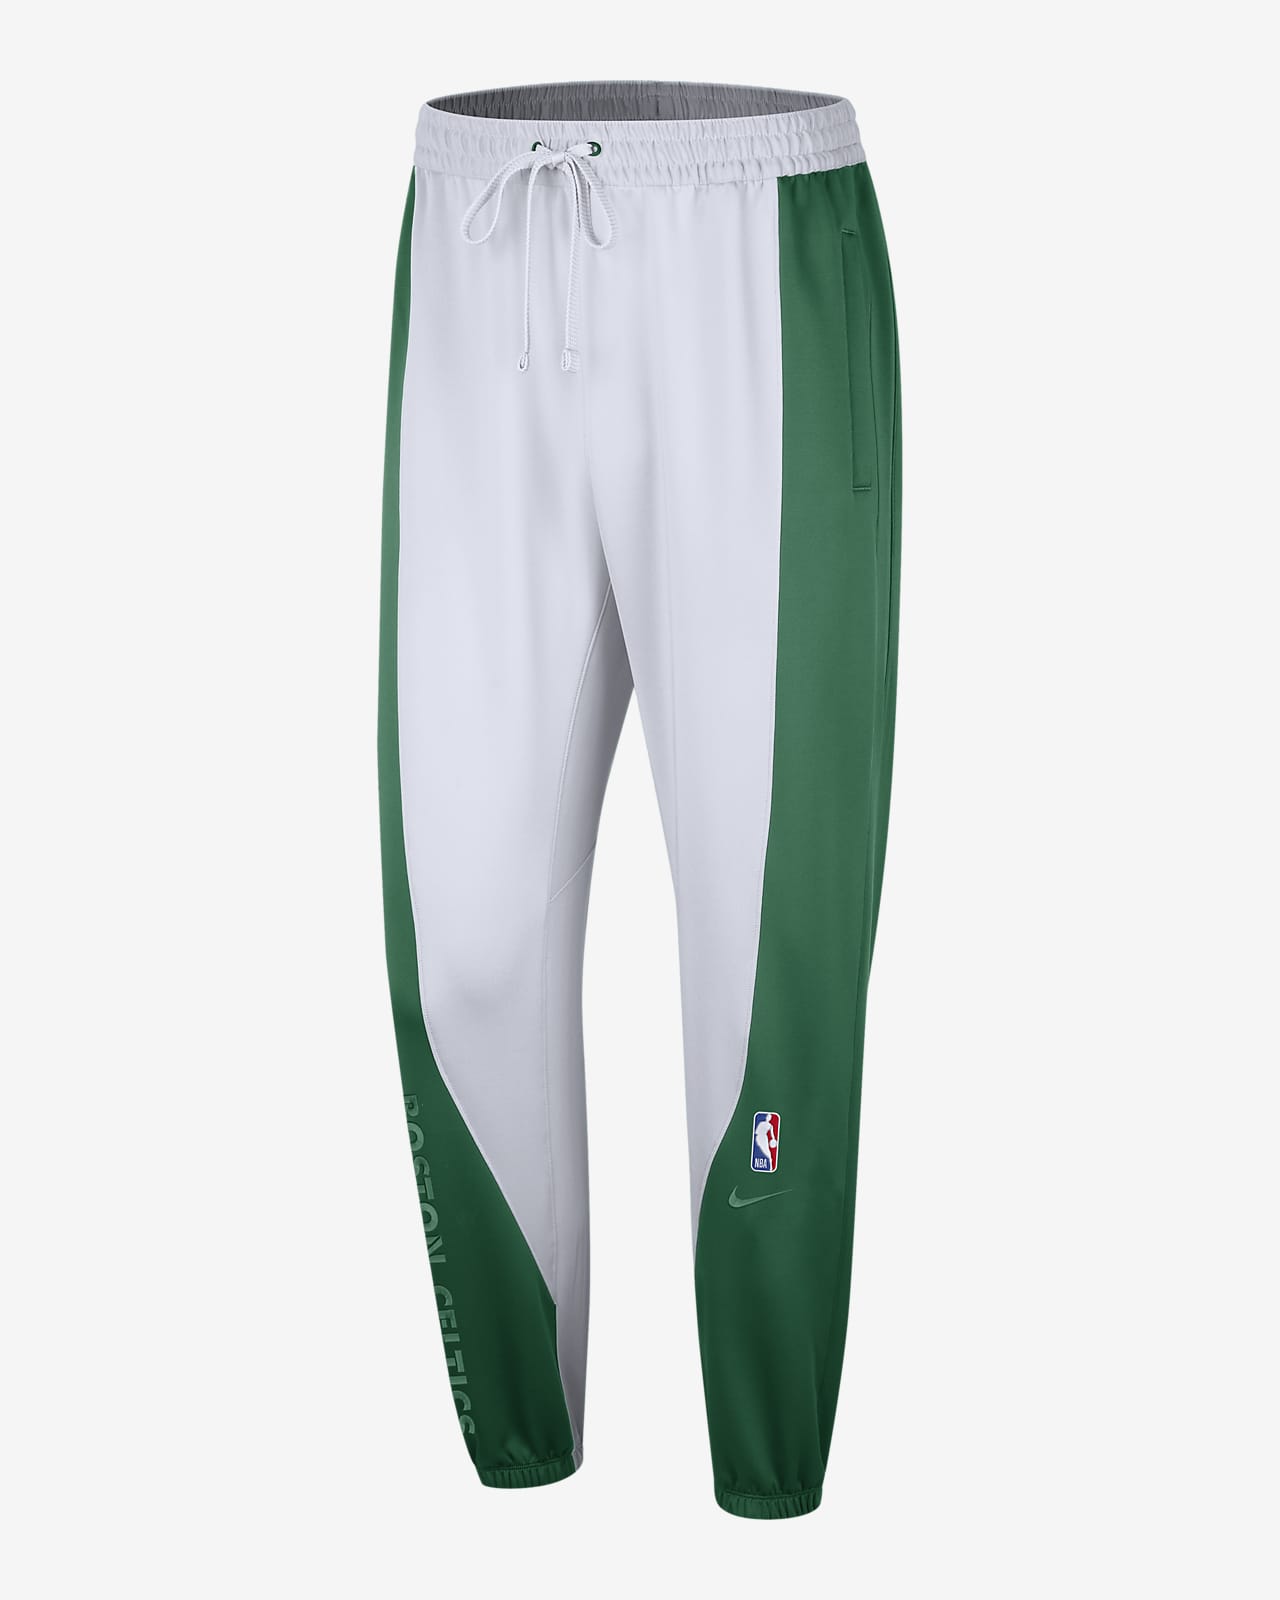 Boston Celtics Showtime Pantalons Nike Dri-FIT NBA - Home